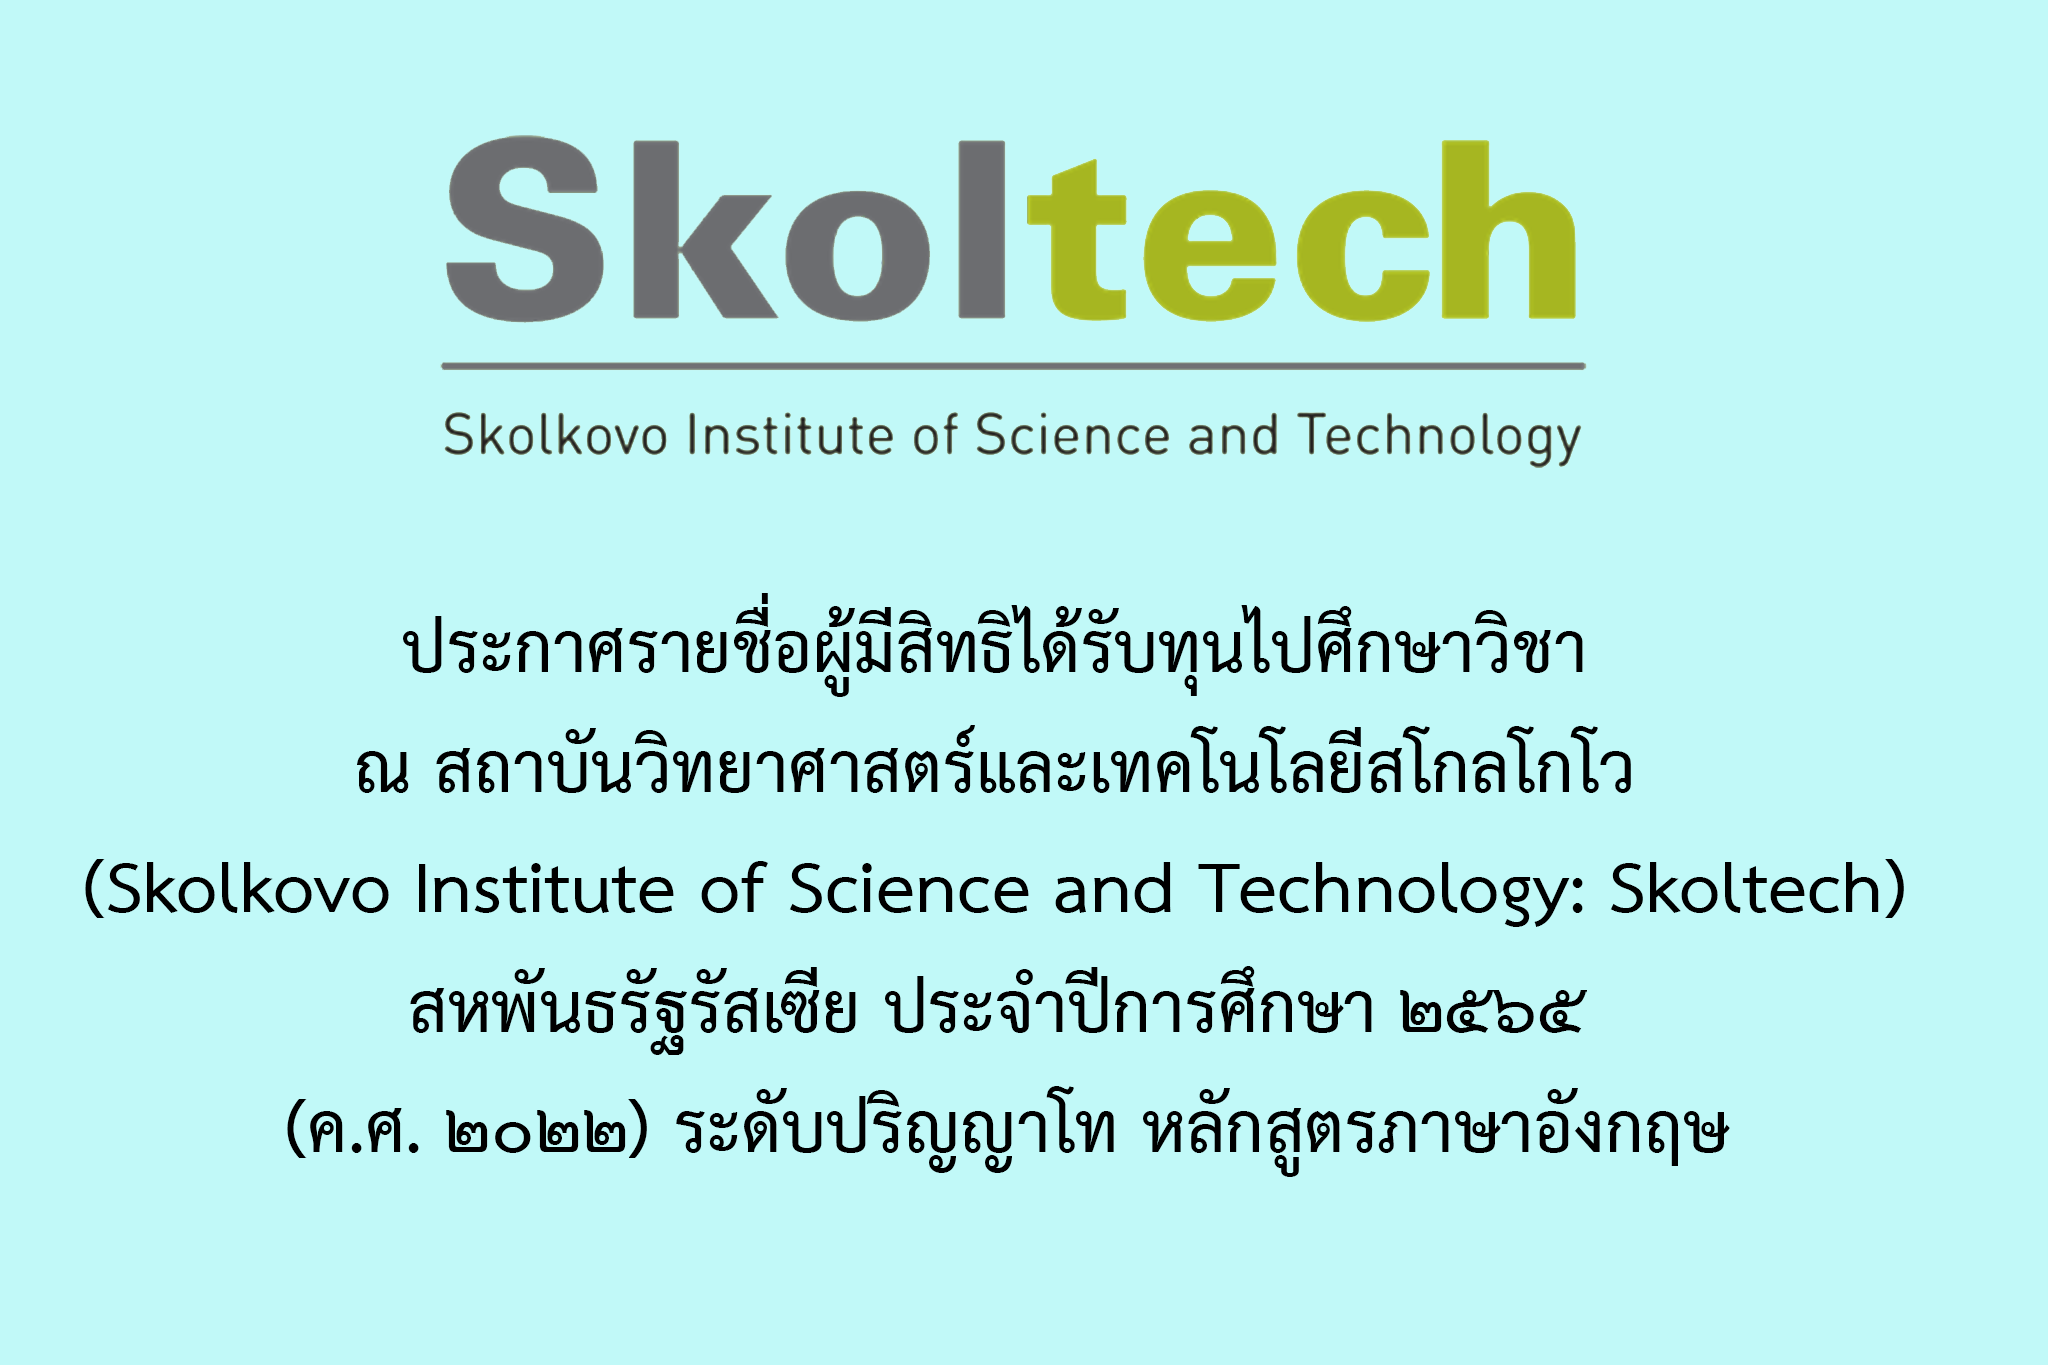 ประกาศรายชื่อผู้มีสิทธิได้รับทุนไปศึกษาวิชา ณ สถาบันวิทยาศาสตร์และเทคโนโลยีสโกลโกโว  (Skolkovo Institute of Science and Technology: Skoltech)  สหพันธรัฐรัสเซีย ประจำปีการศึกษา ๒๕๖๕ (ค.ศ. ๒๐๒๒) ระดับปริญญาโท หลักสูตรภาษาอังกฤษ